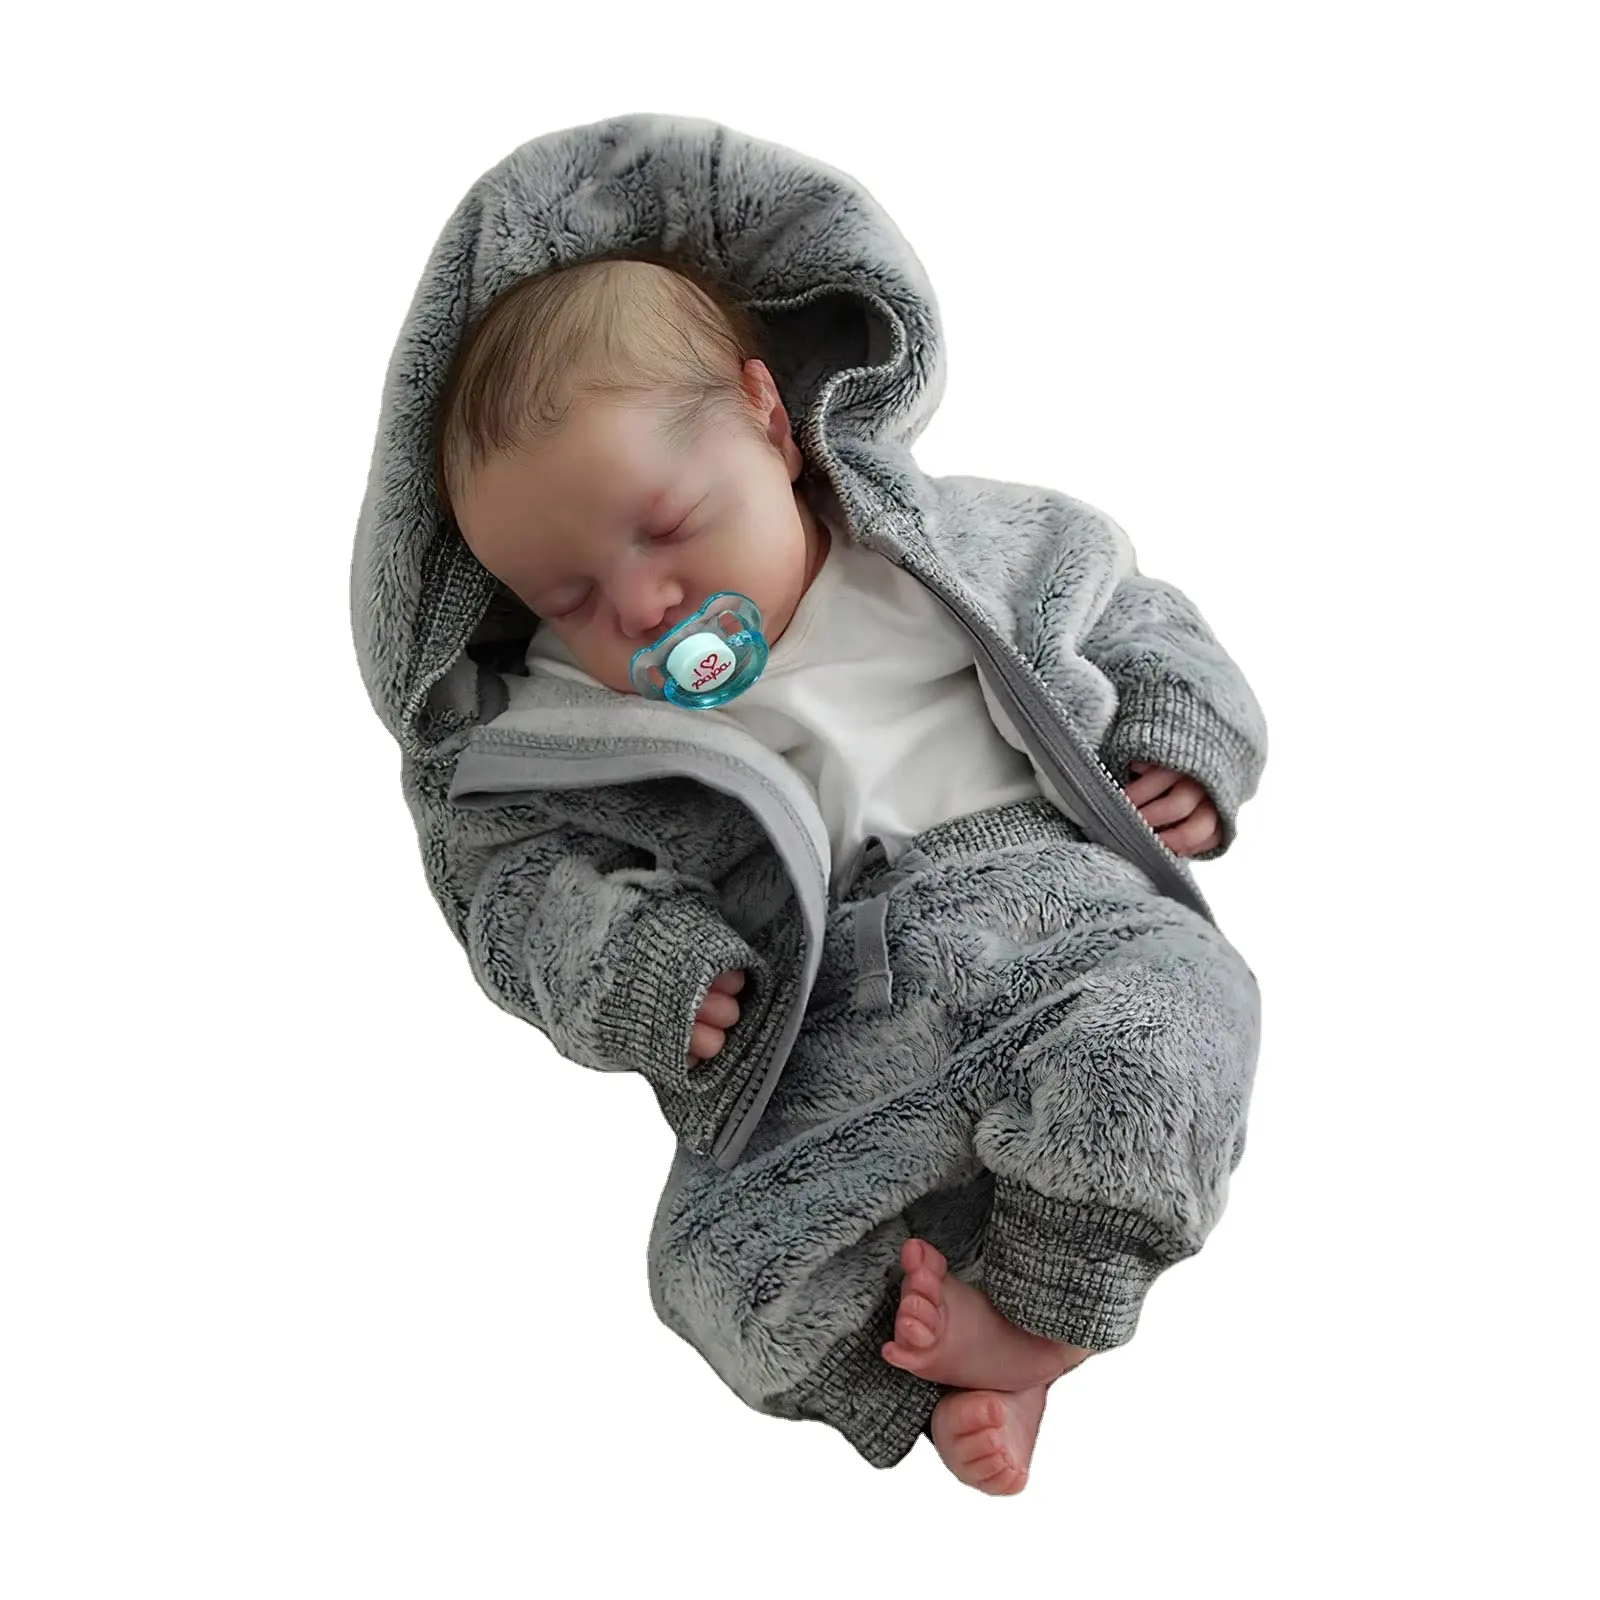 Offre Spéciale réaliste 18 pouces nouveau-né fait à la main réaliste réaliste plein Silicone Reborn bébé poupée cadeaux pour garçon